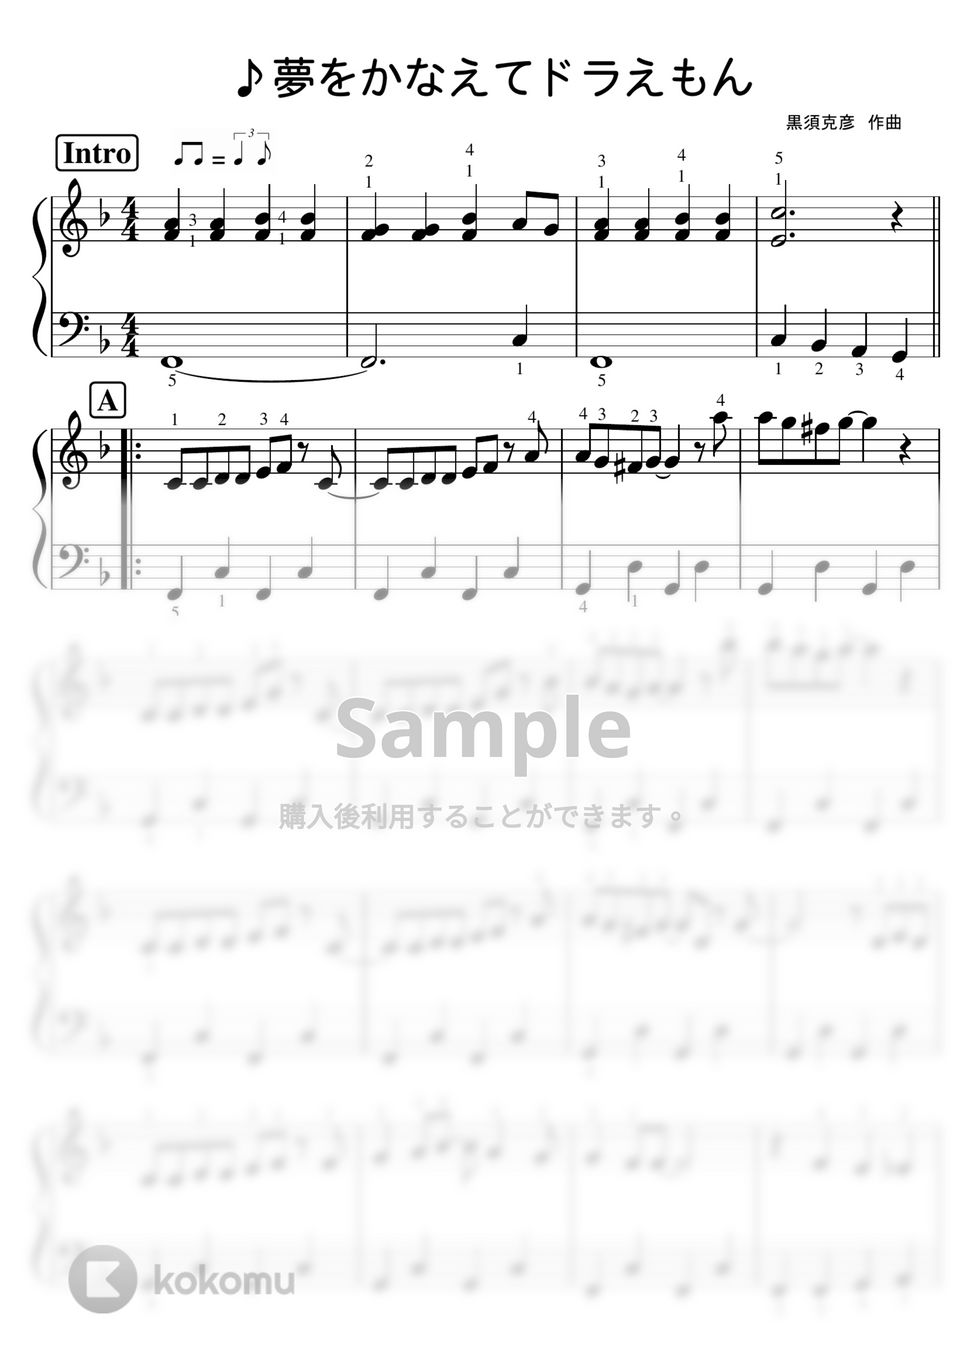 ドラえもん - 【初級】夢をかなえてドラえもん/歌詞つき (MAO) by ピアノのせんせいの楽譜集